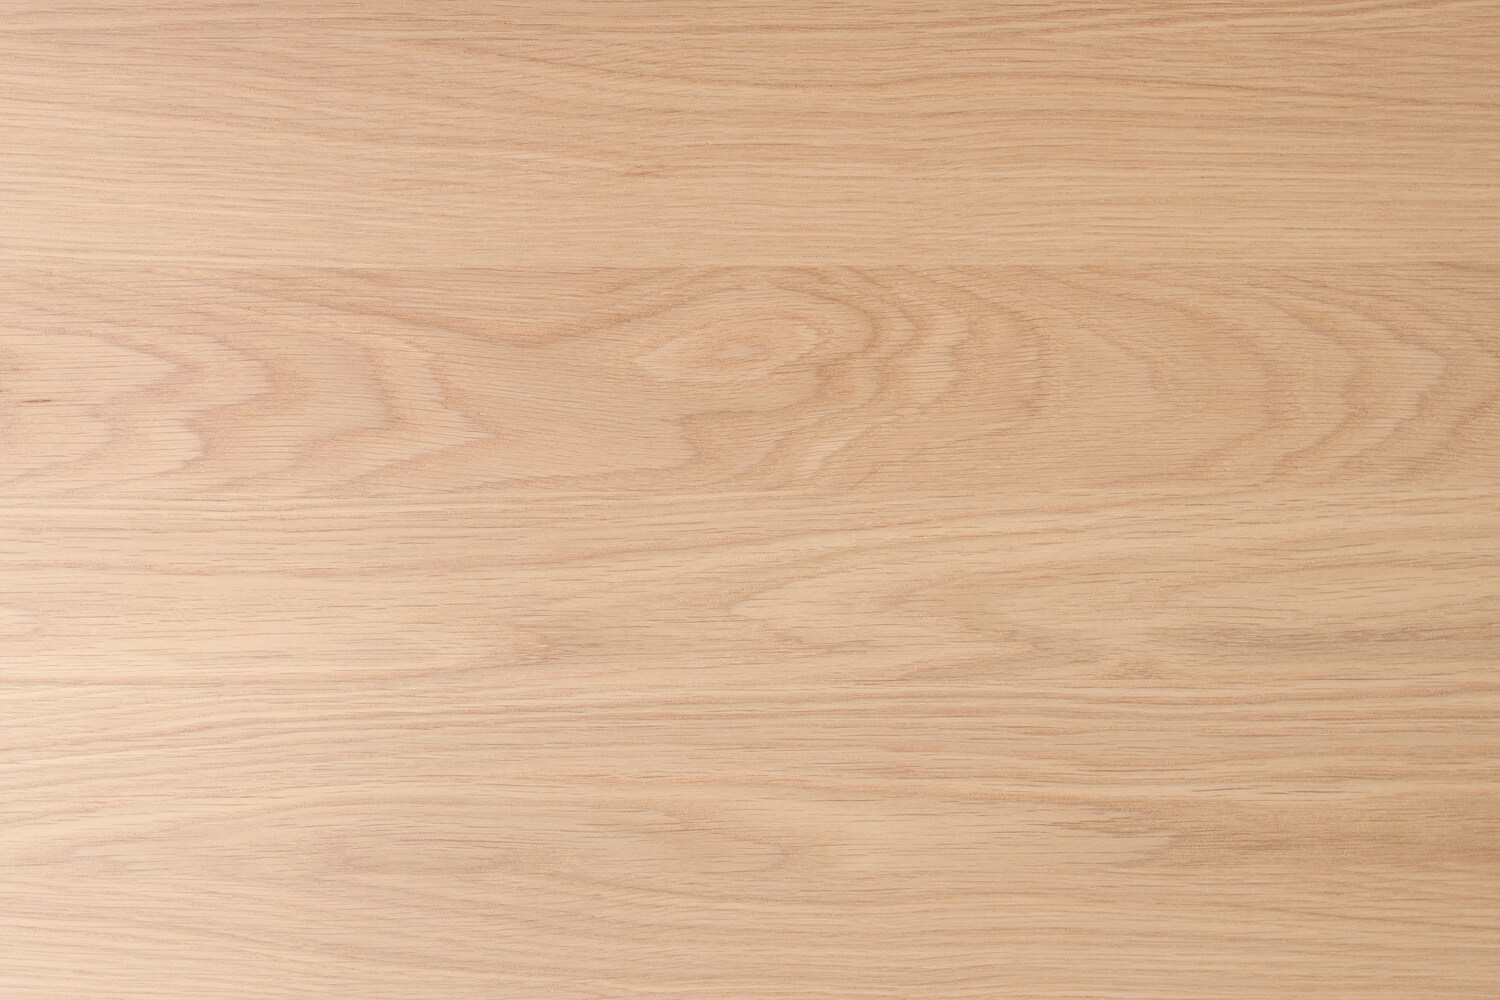 Hurford Flooring Genuine Oak Wide Engineered Timber Raw - Online Flooring Store